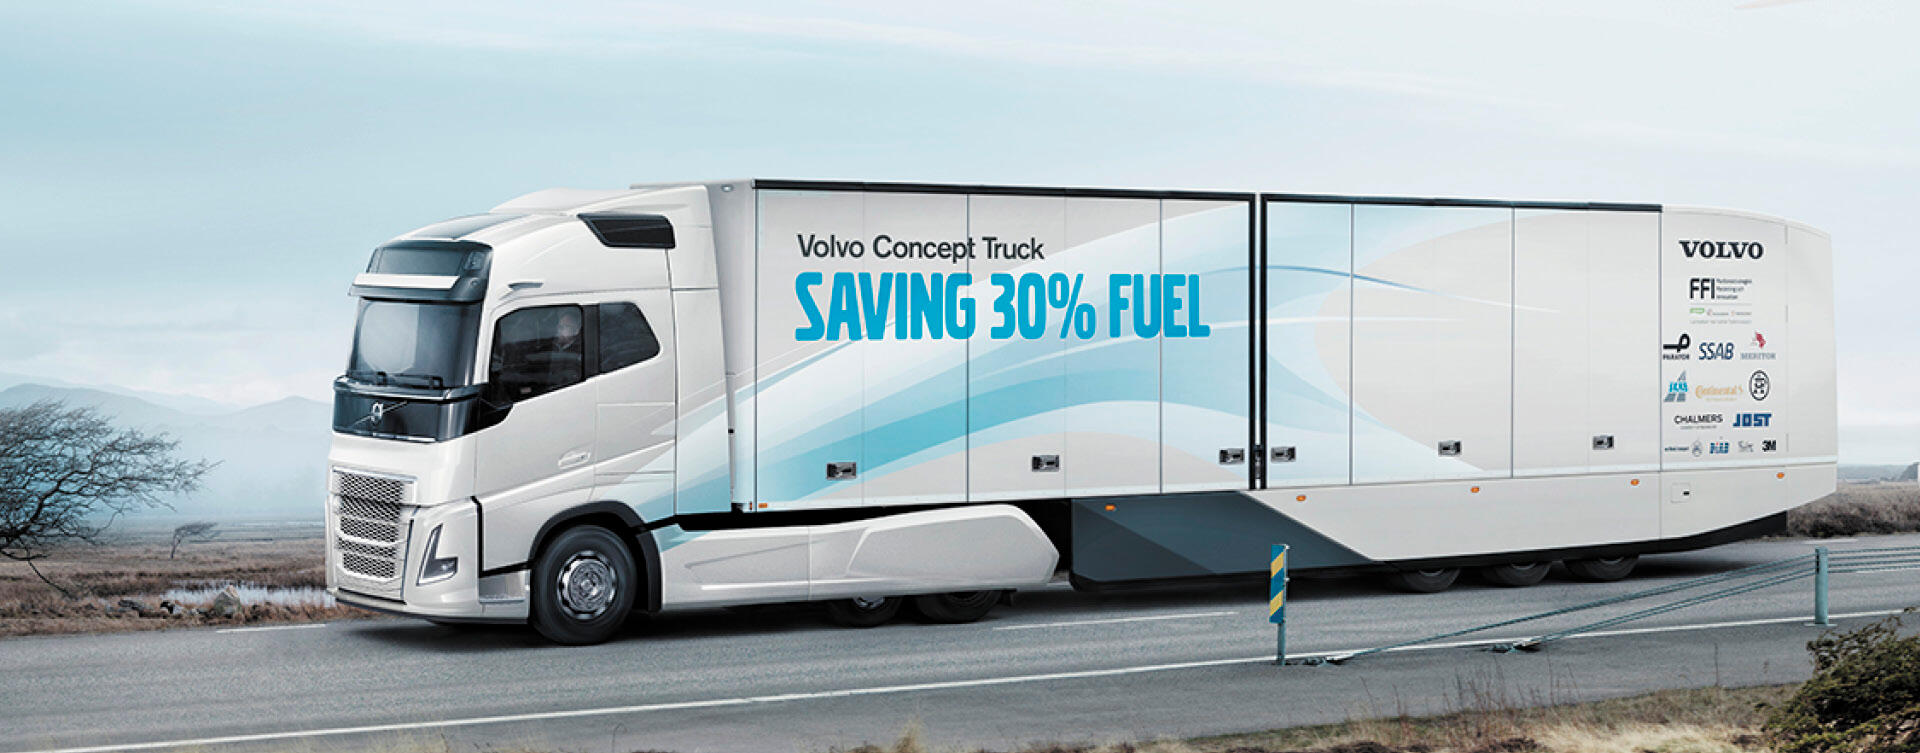 Volvo Trucks: ontwikkeling milieuvriendelijker transport versnellen